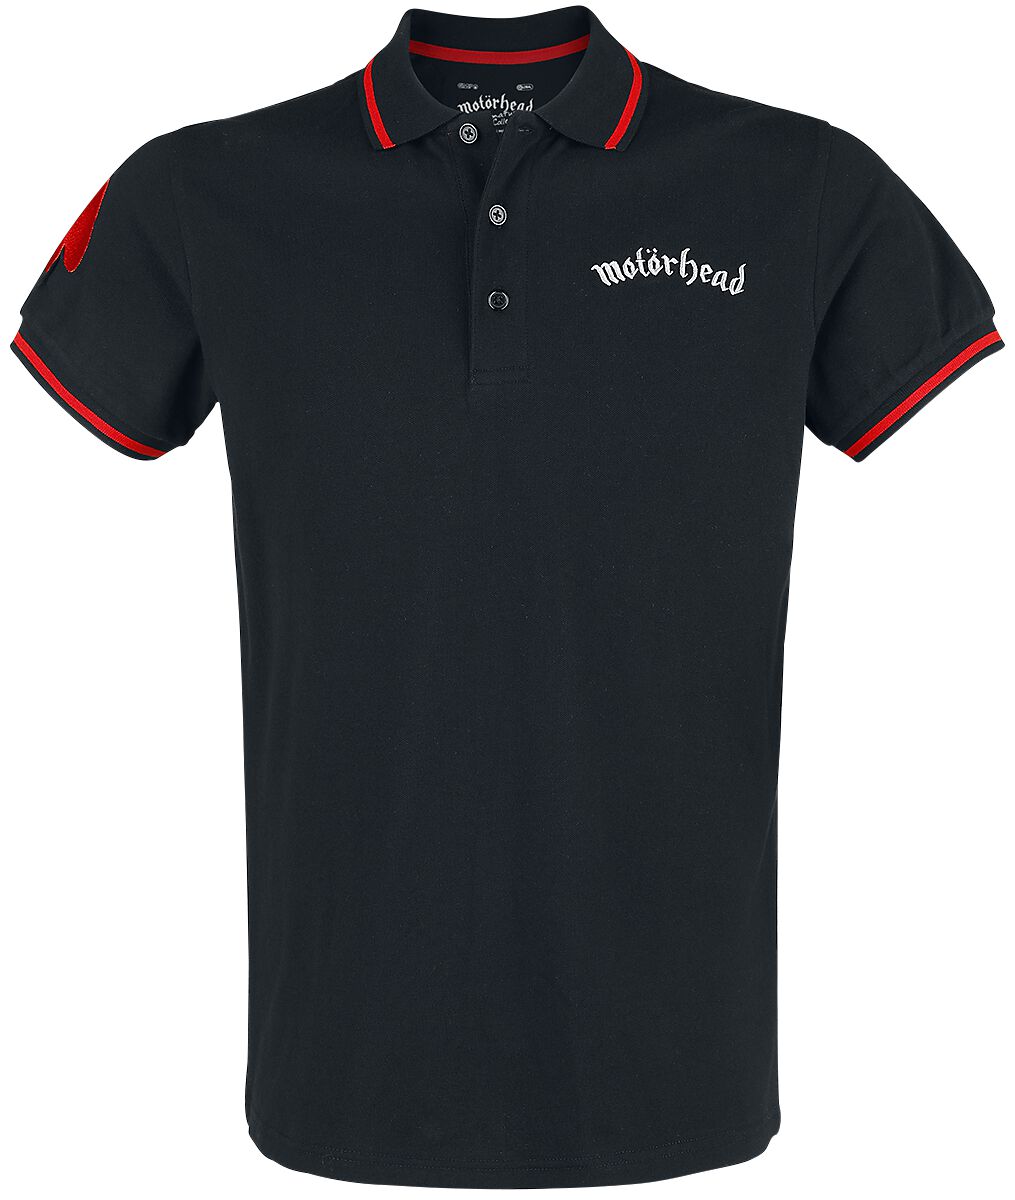 Motörhead Poloshirt - EMP Signature Collection - M bis 3XL - für Männer - Größe 3XL - schwarz/rot  - EMP exklusives Merchandise!